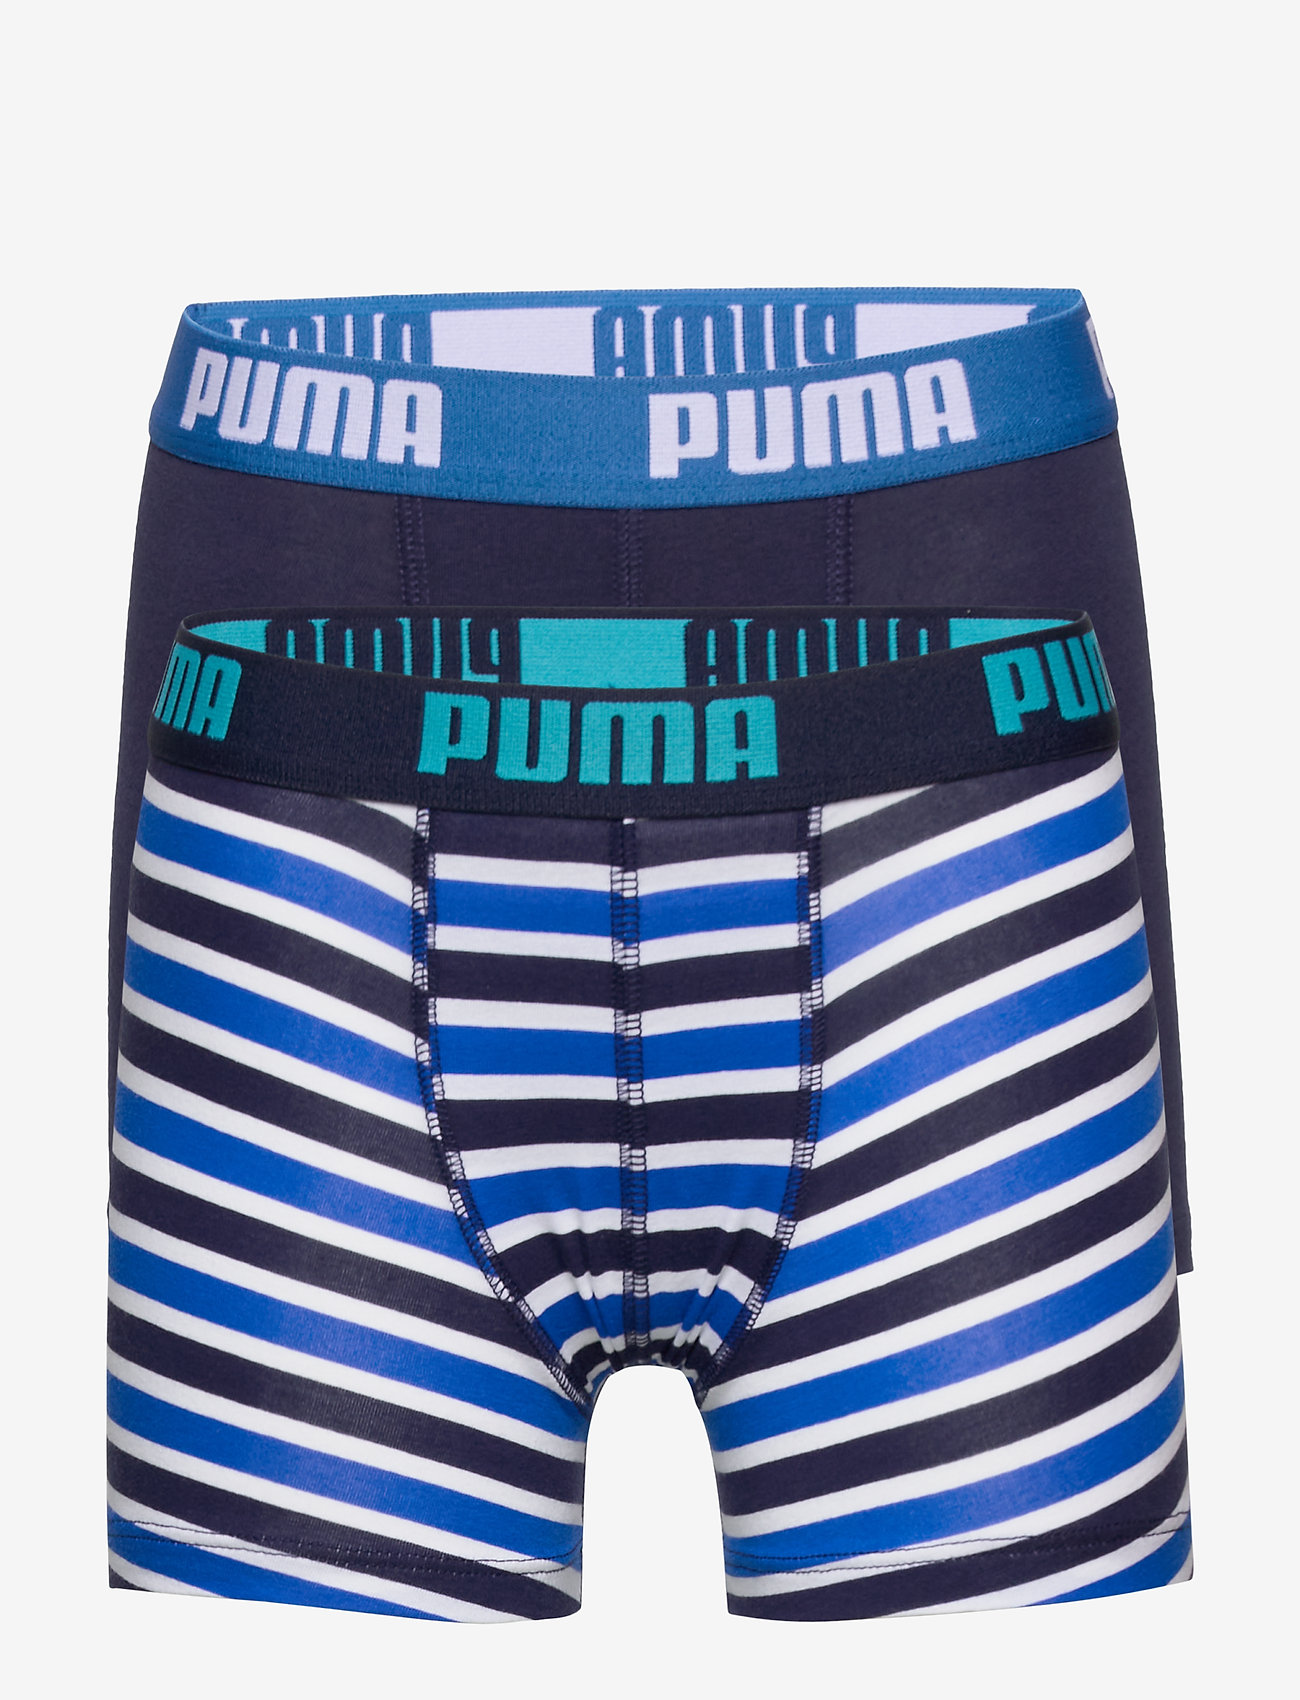 puma boys underwear